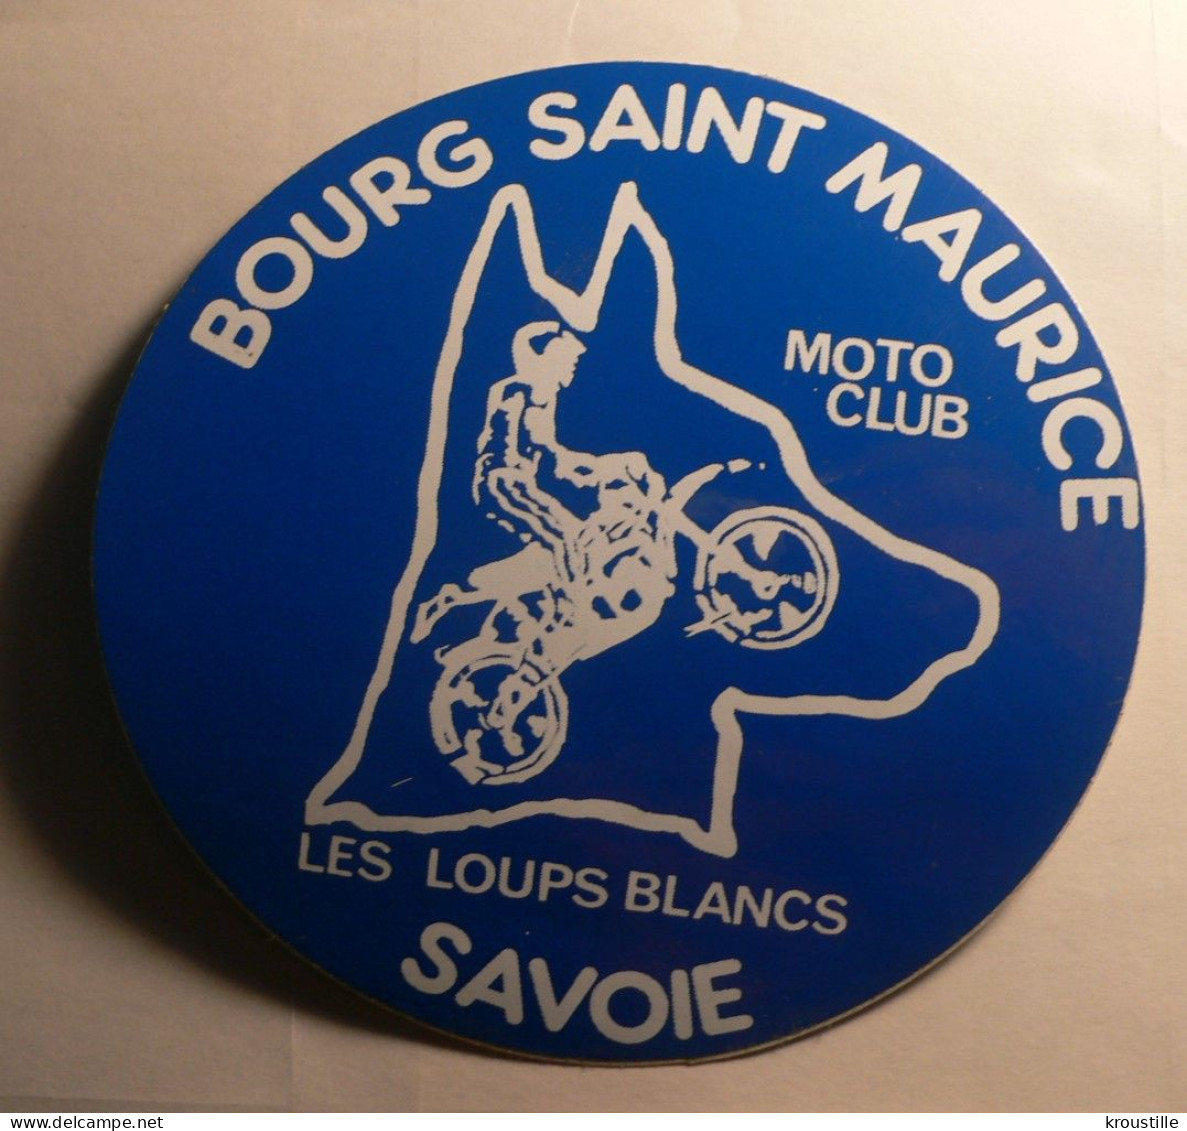 AUTOCOLLANT MOTO CLUB BOURG-ST-MAURICE LES LOUPS BLANCS - SAVOIE - Autocollants